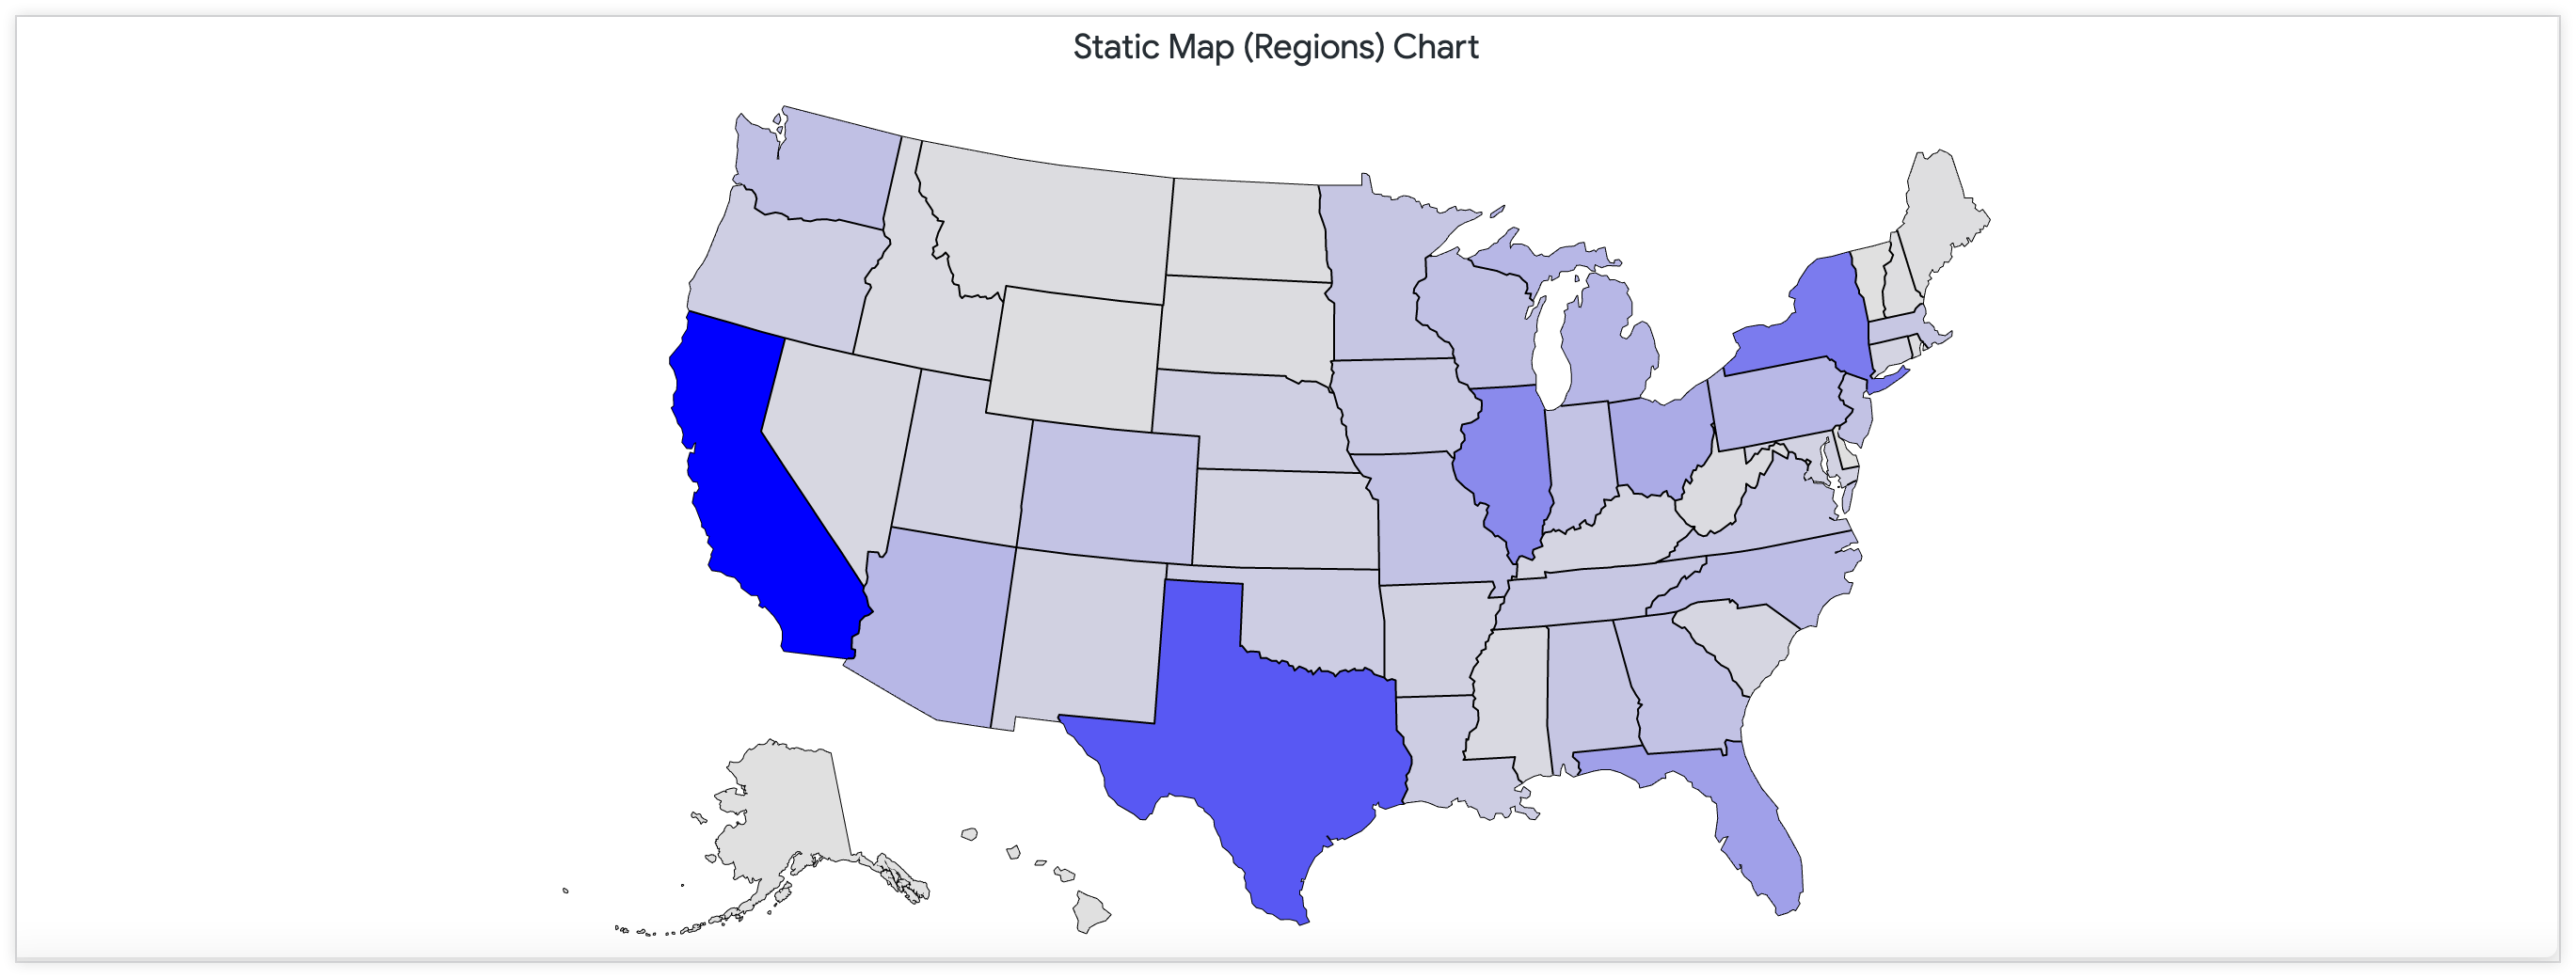 Mapa estático que mostra o número de lojas nos Estados Unidos com uma paleta de cores contínua.